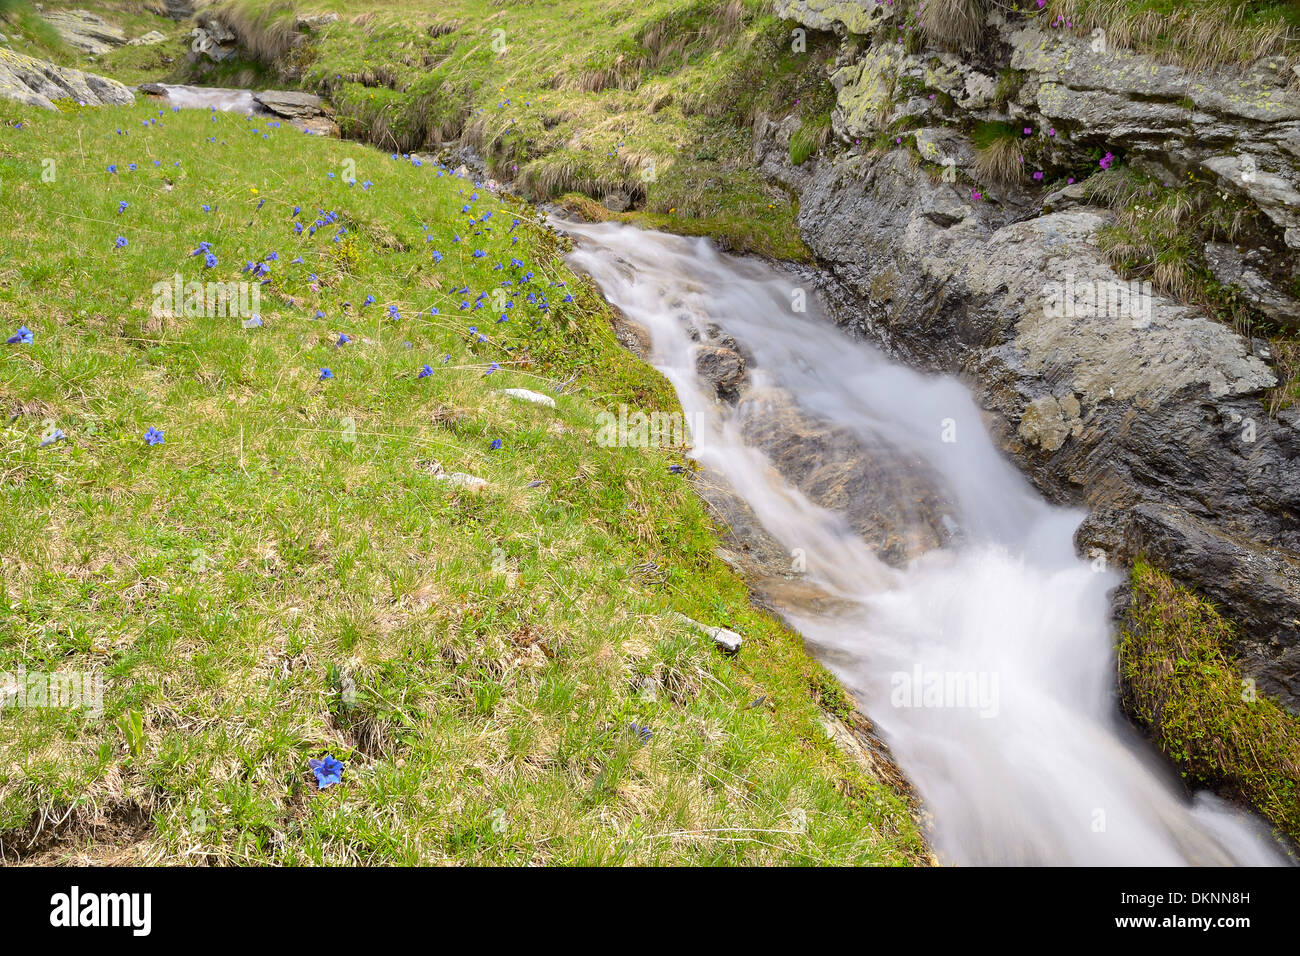 Piccolo ruscello che scorre tra rocce e lussureggianti prati verdi, presa con una lenta velocità di otturatore. Posizione: Alpi occidentali, Piemonte, Italia Foto Stock